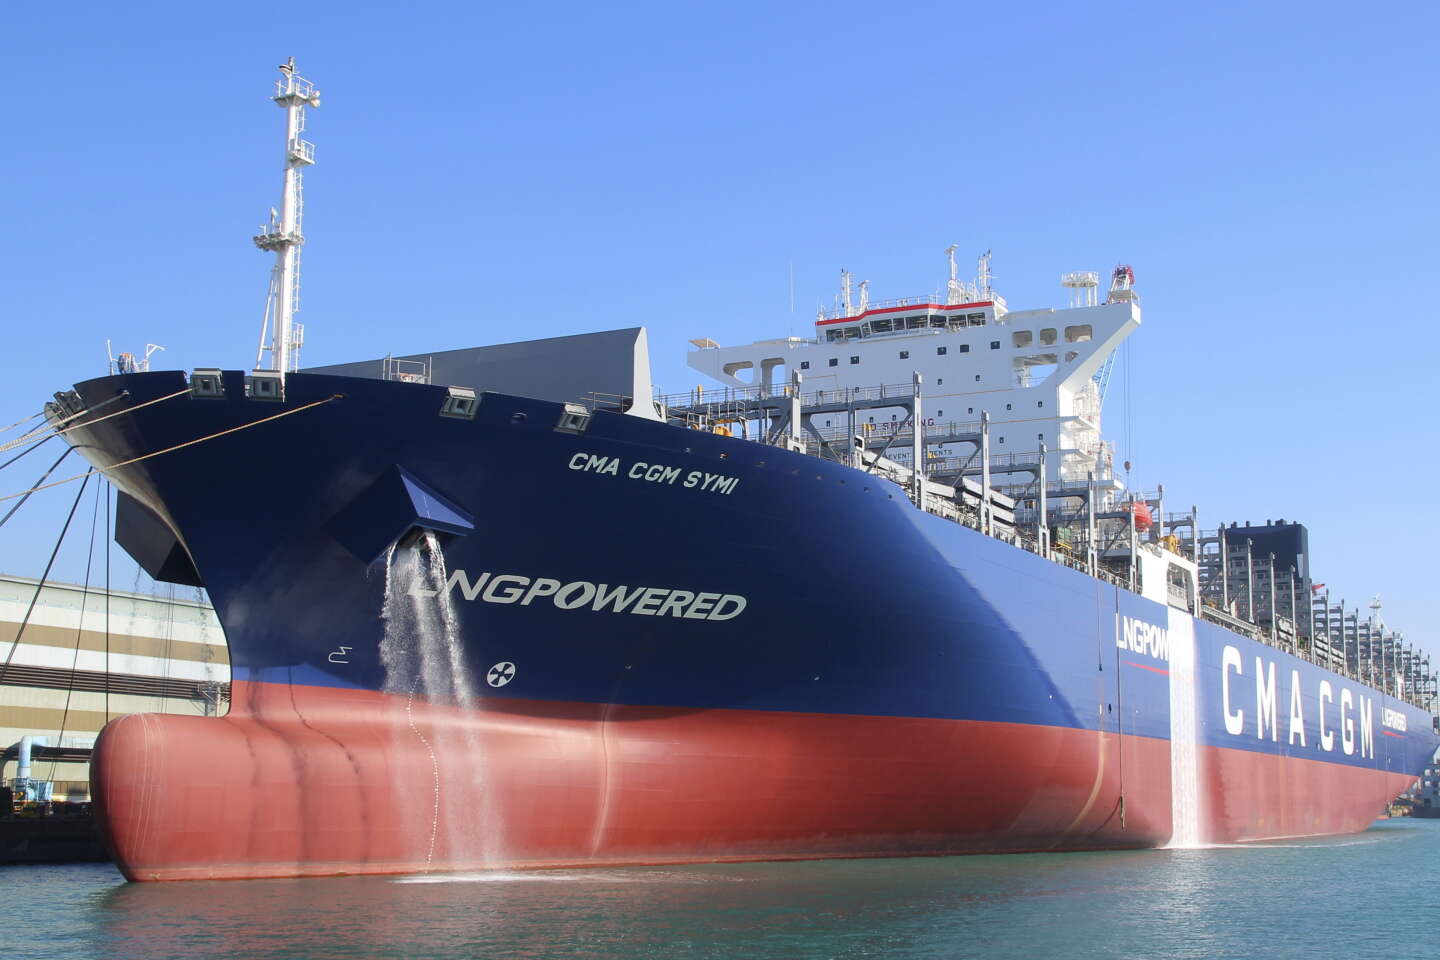 Cinq armateurs s’engagent sur une décarbonation totale du transport maritime en 2050